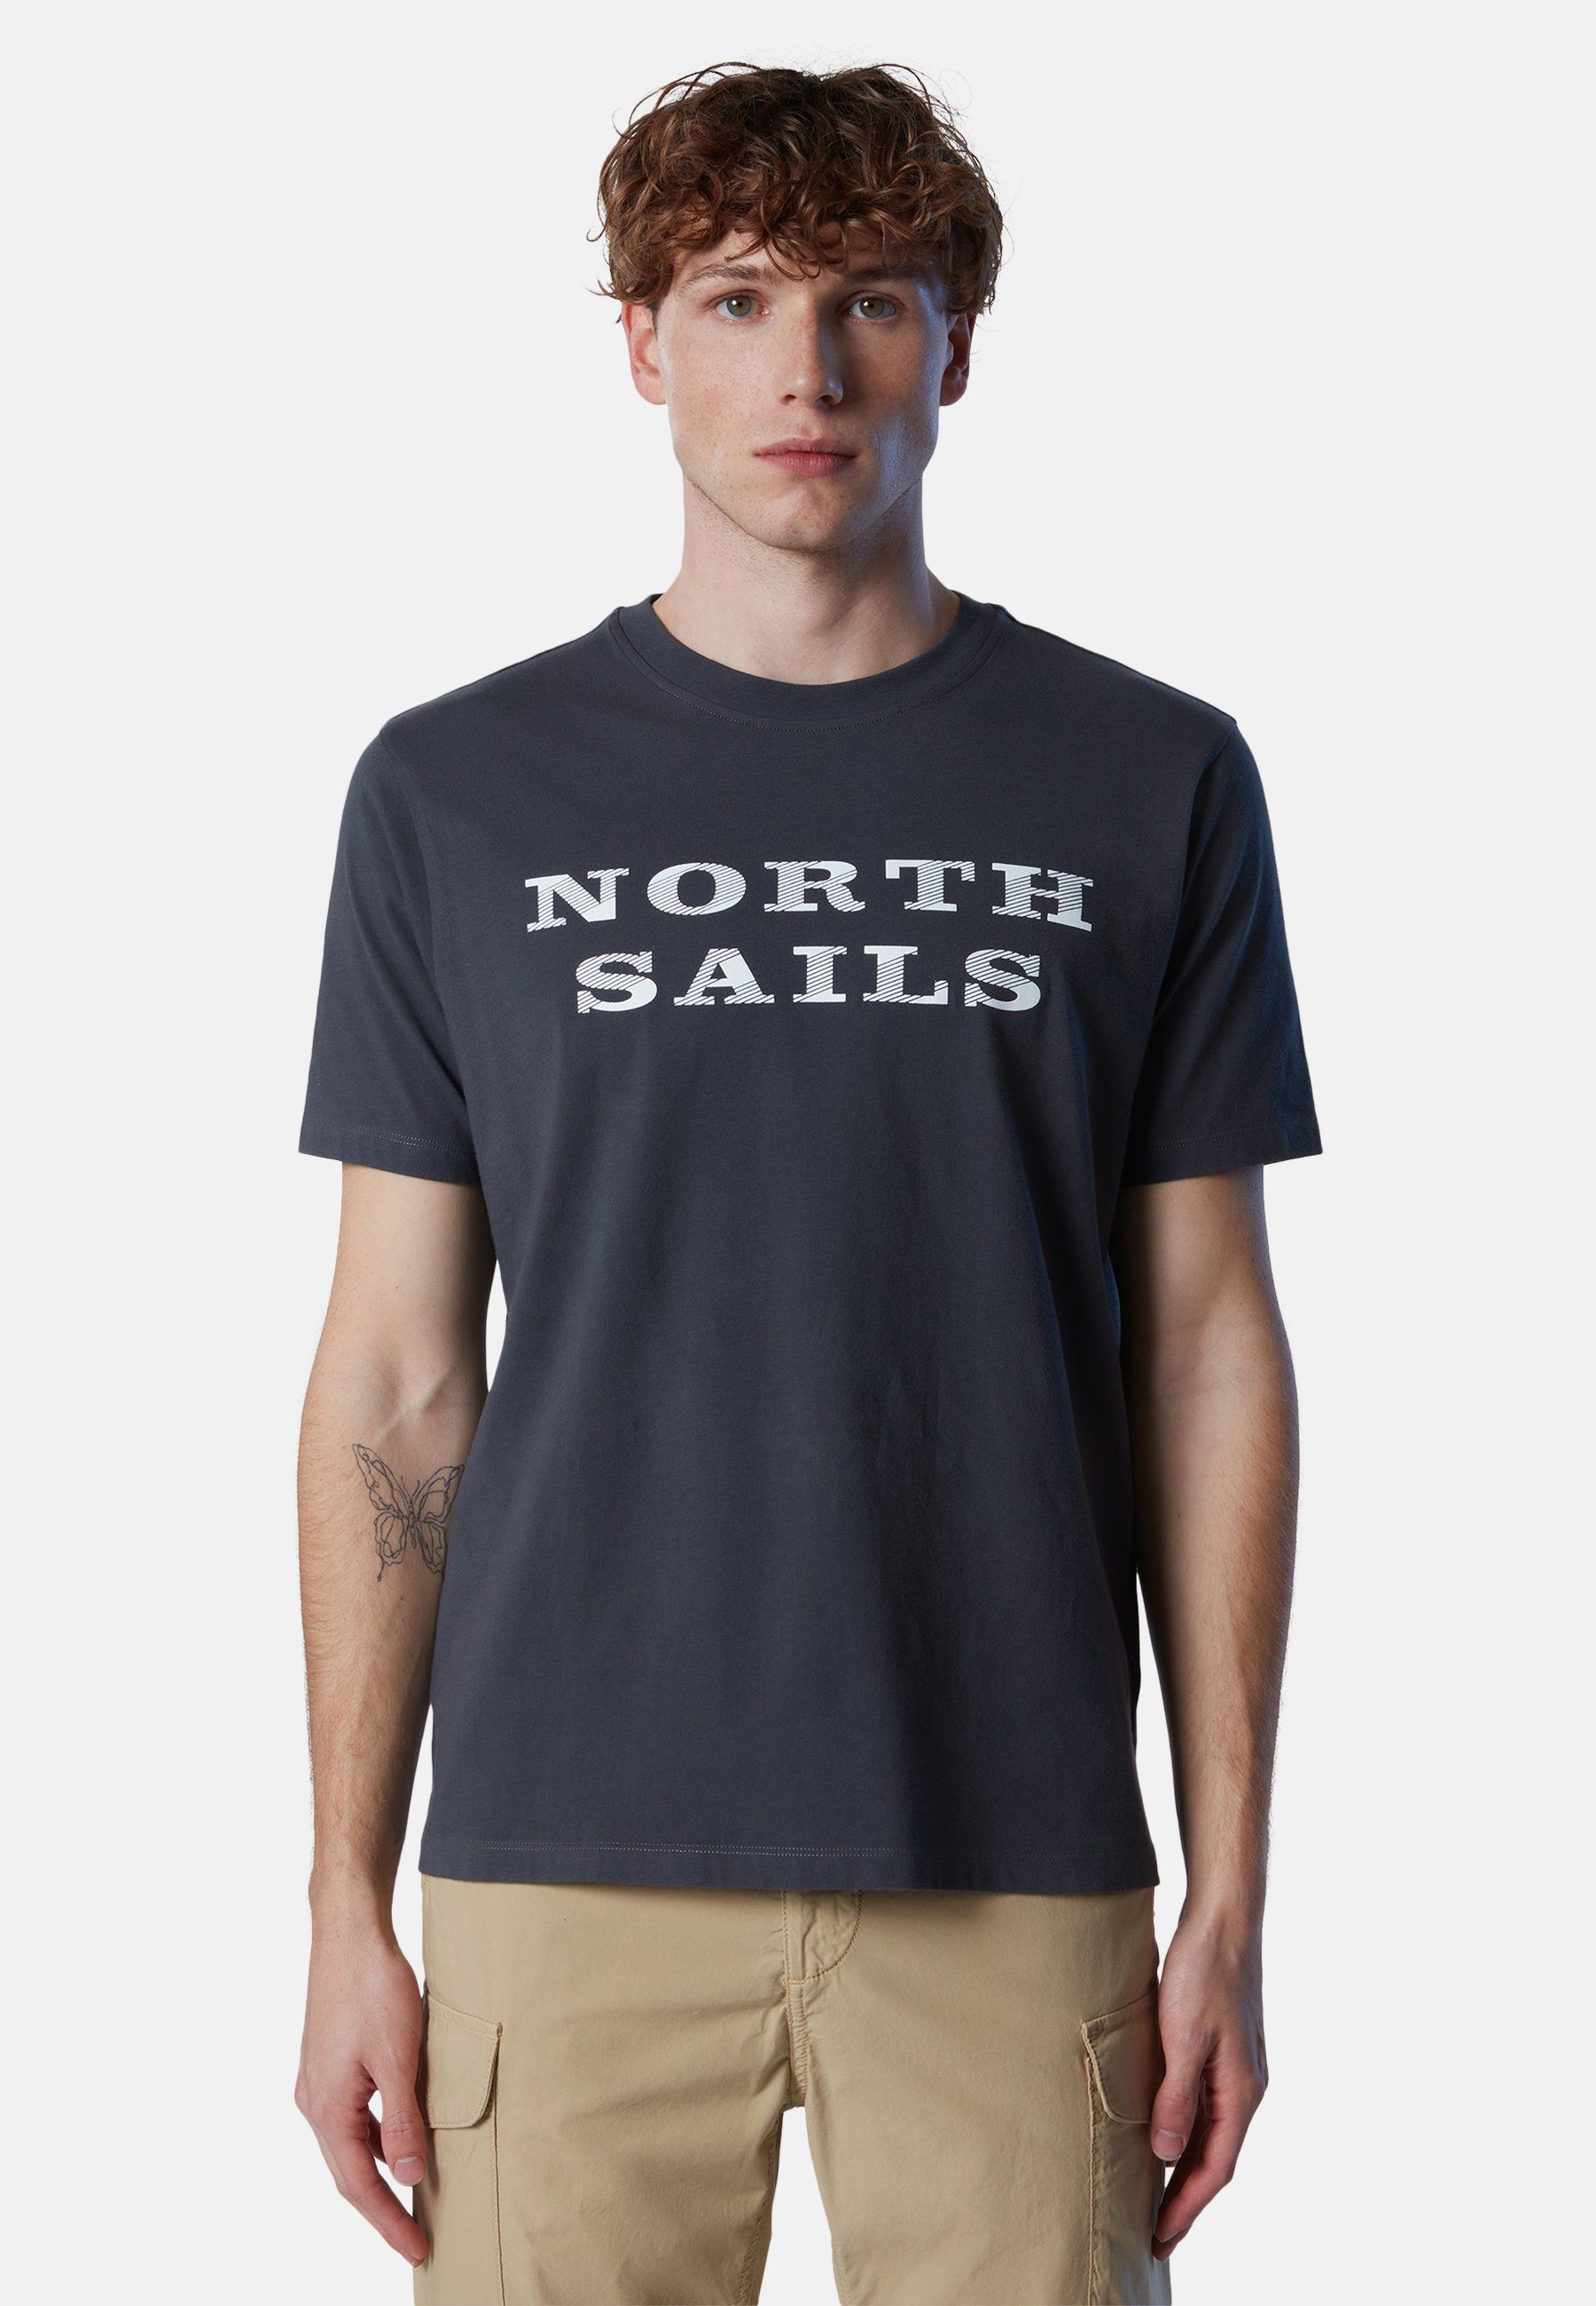 North Sails T-Shirt T-Shirt mit Brustaufdruck Ton-in-Ton-Nähte grey